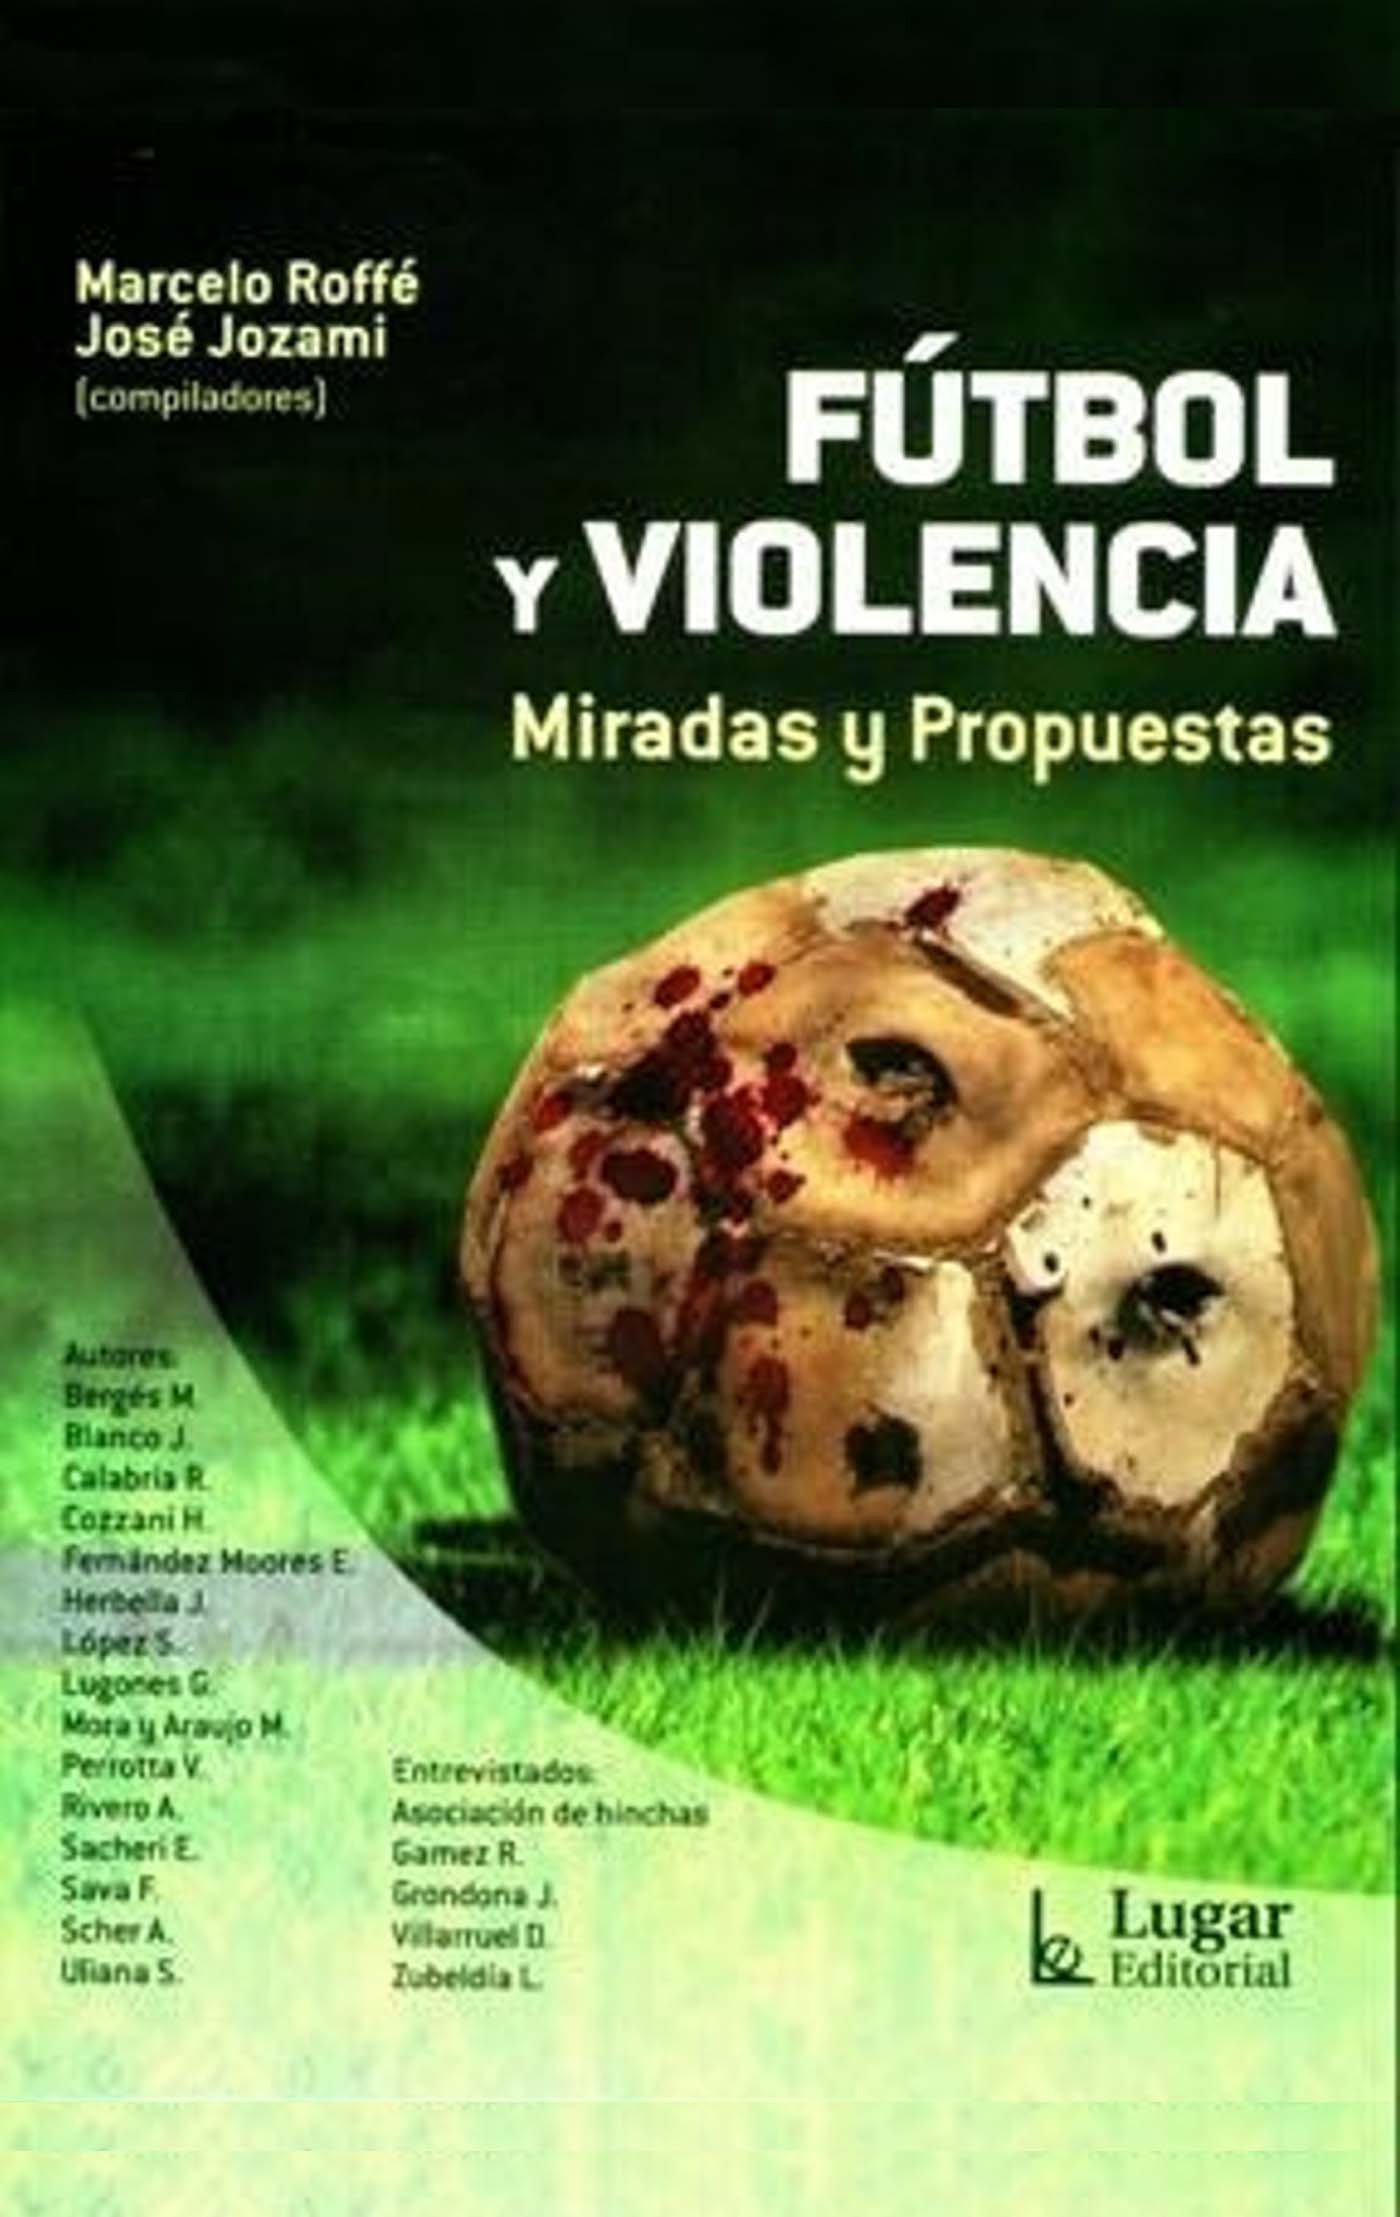 Fútbol y violencia Miradas y propuestas Marcelo Roffé